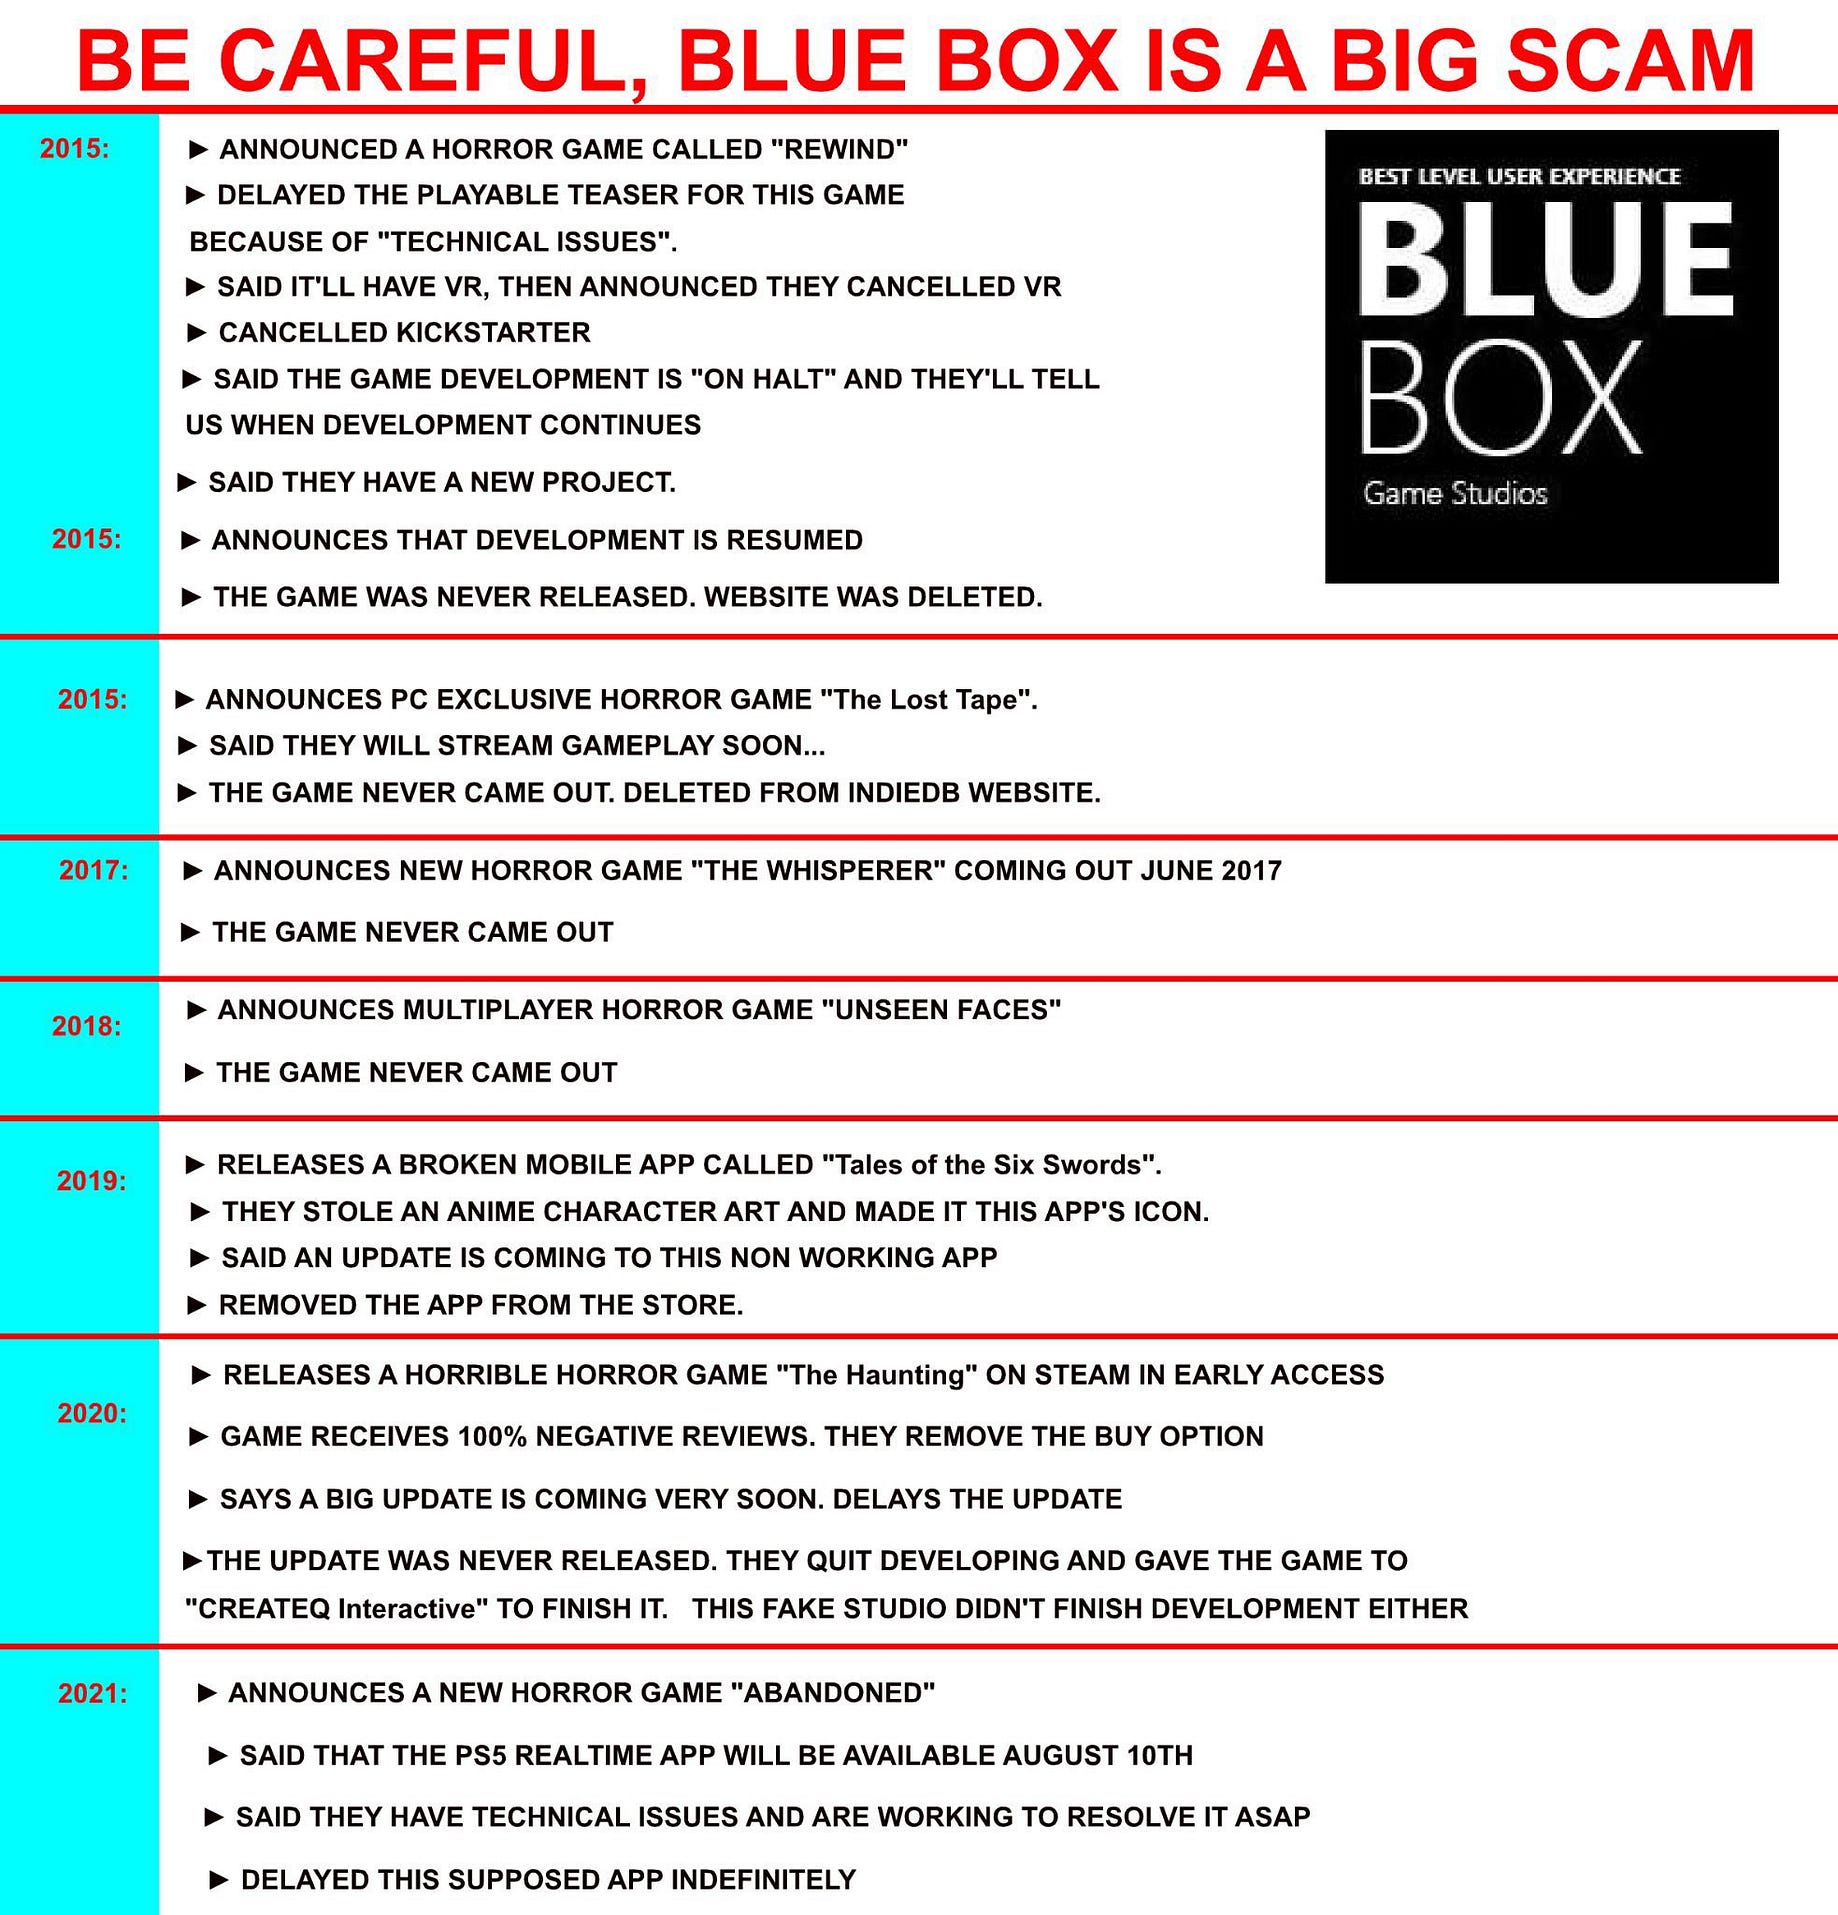 Is BLUE BOX Game Studios a Scam? | Medium